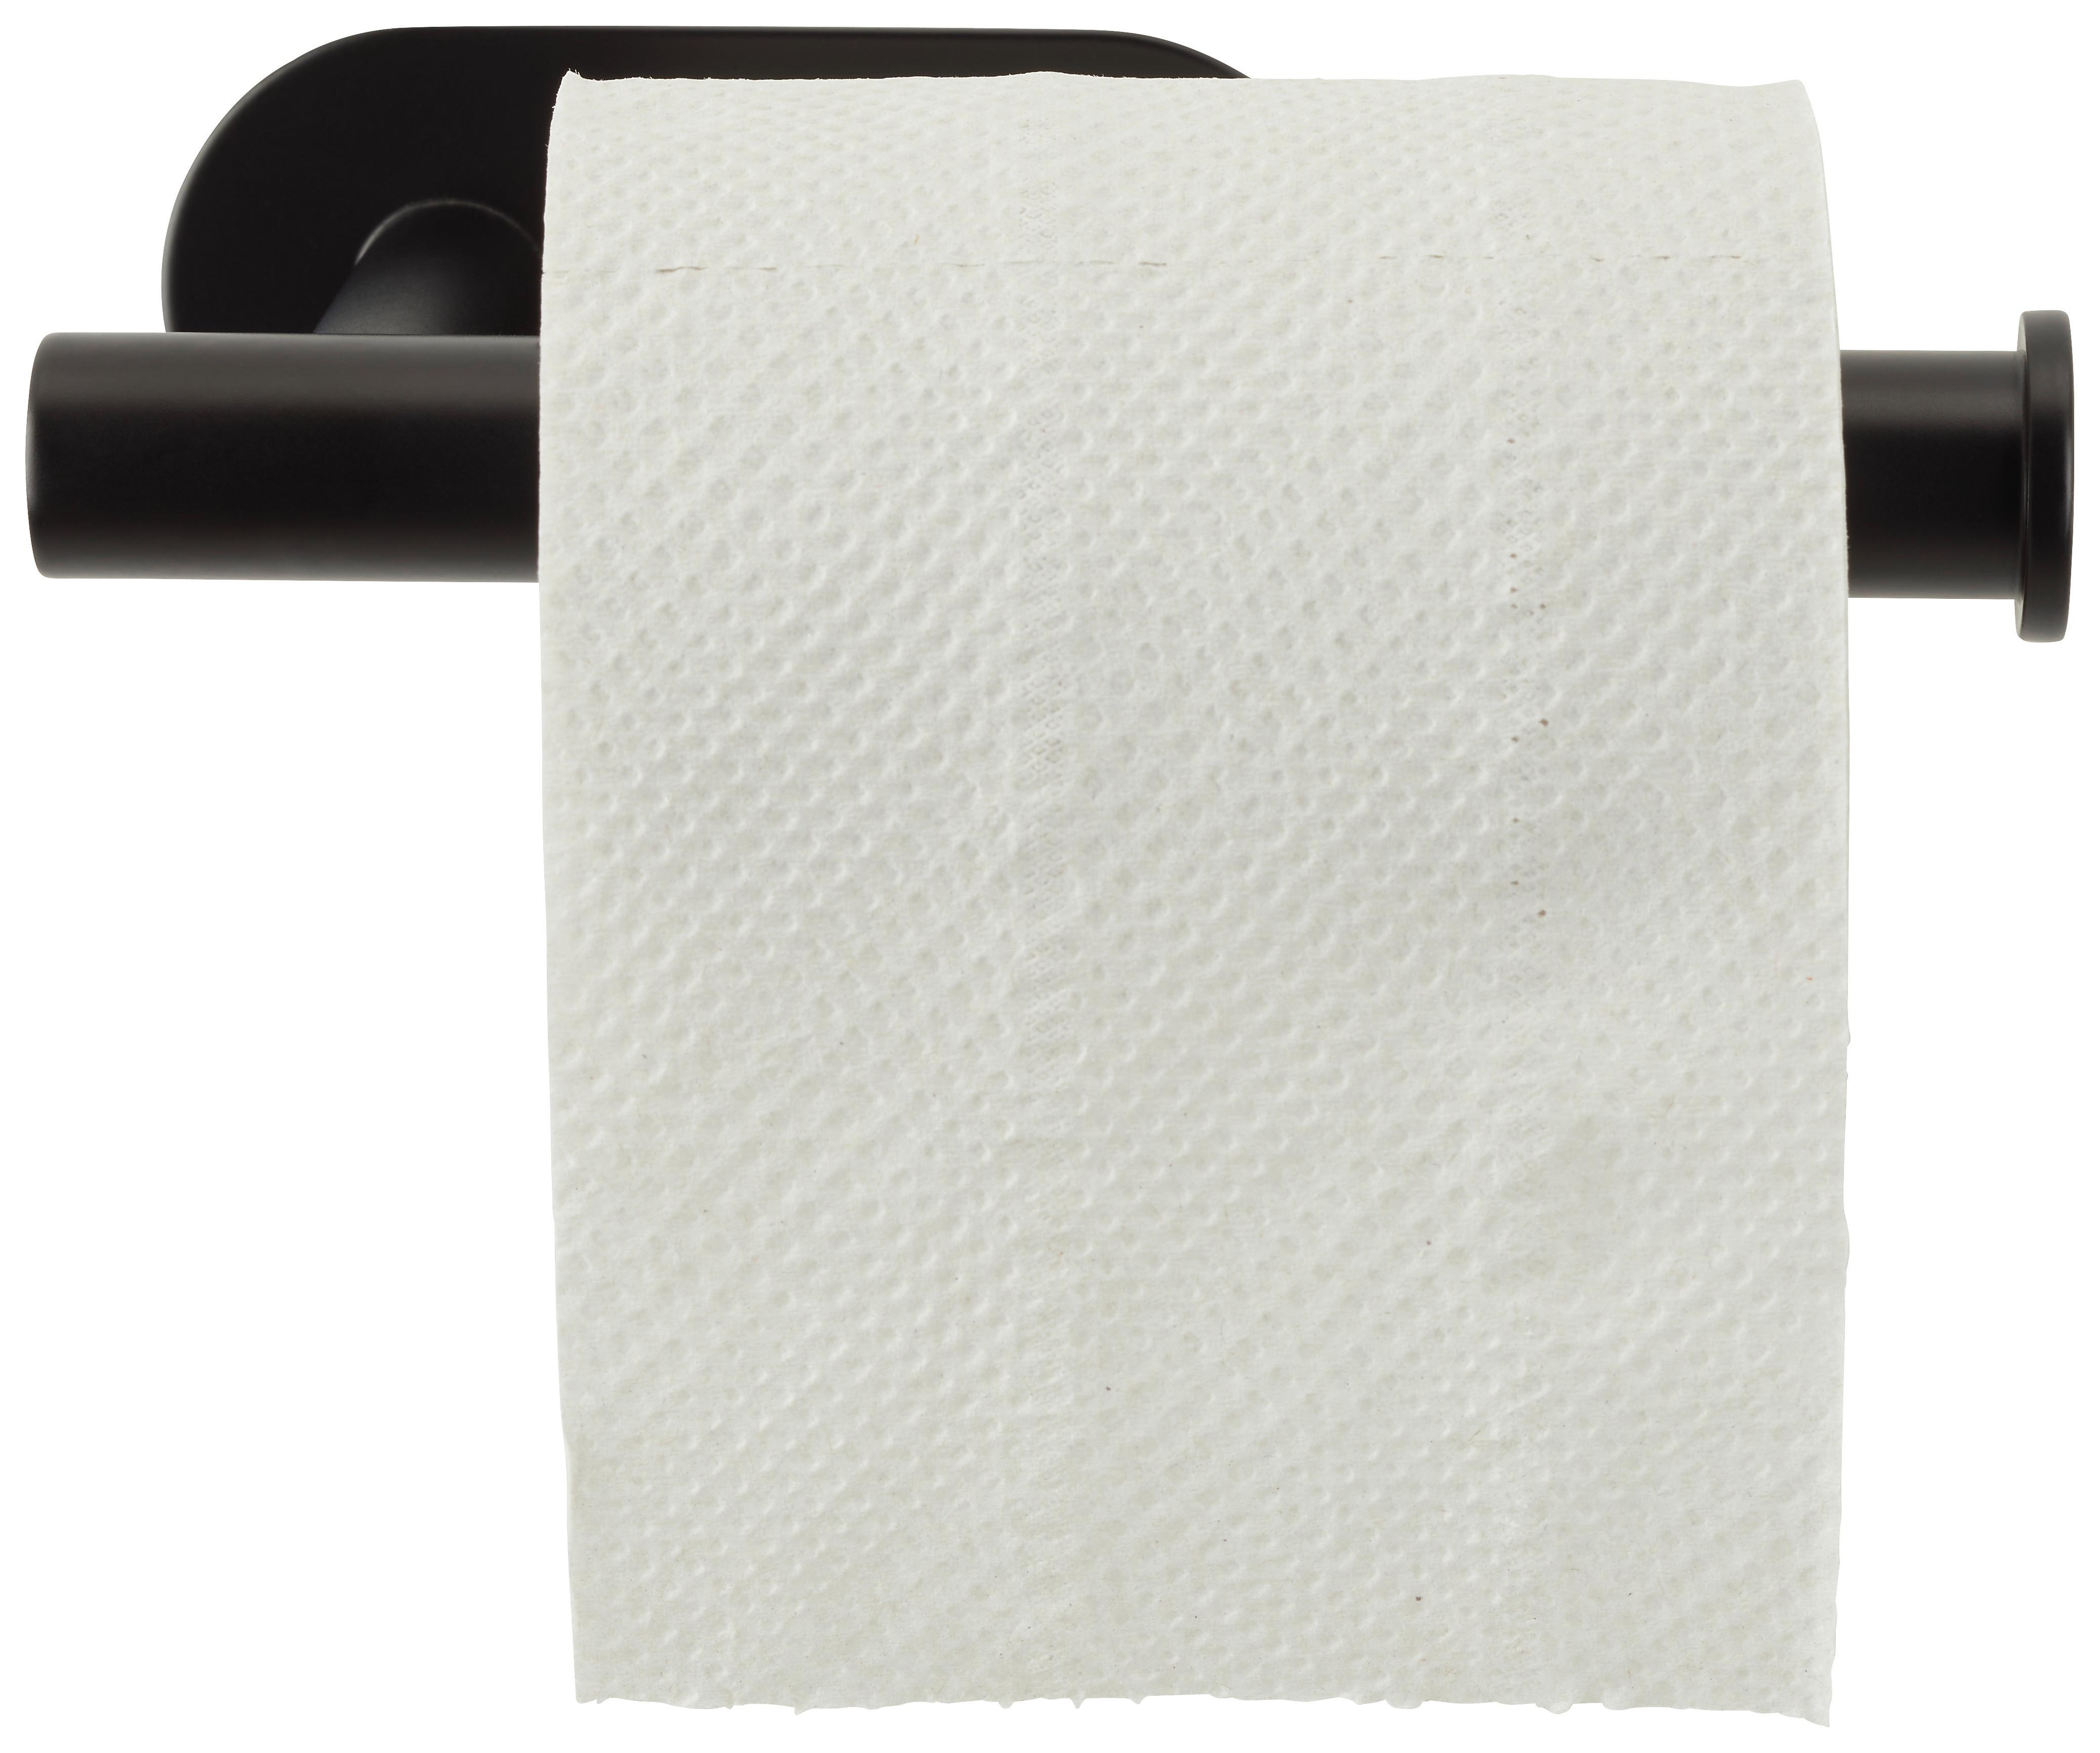 Toilettenpapierhalter aus Metall in Schwarz - Schwarz, MODERN, Metall (16/4,5/7cm) - Modern Living